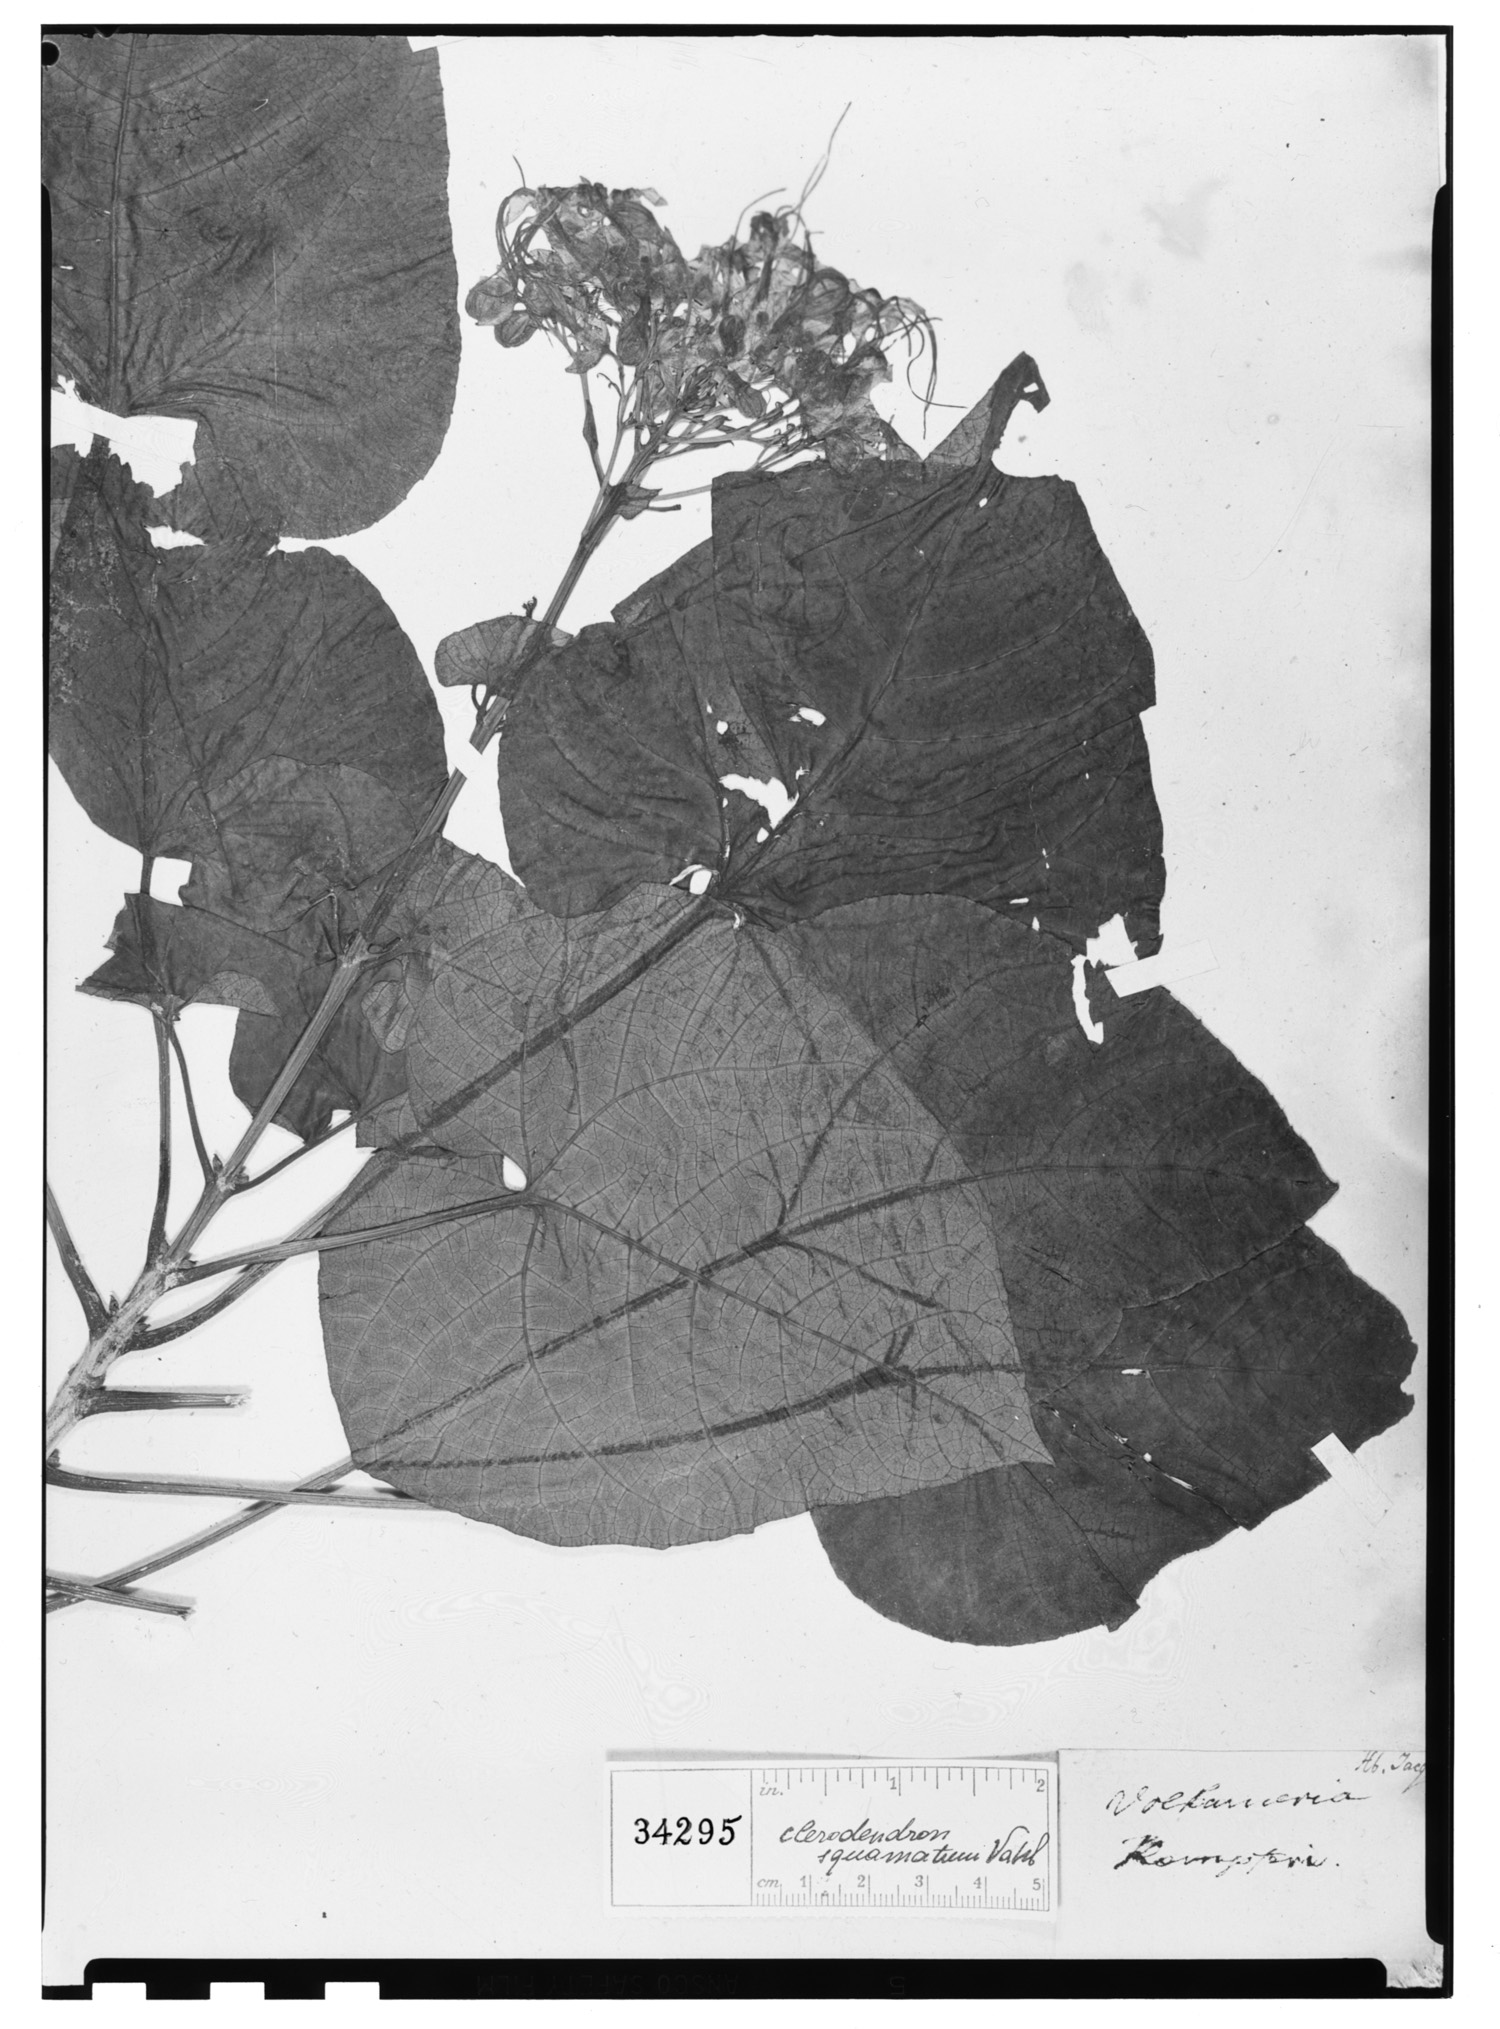 Clerodendrum japonicum image